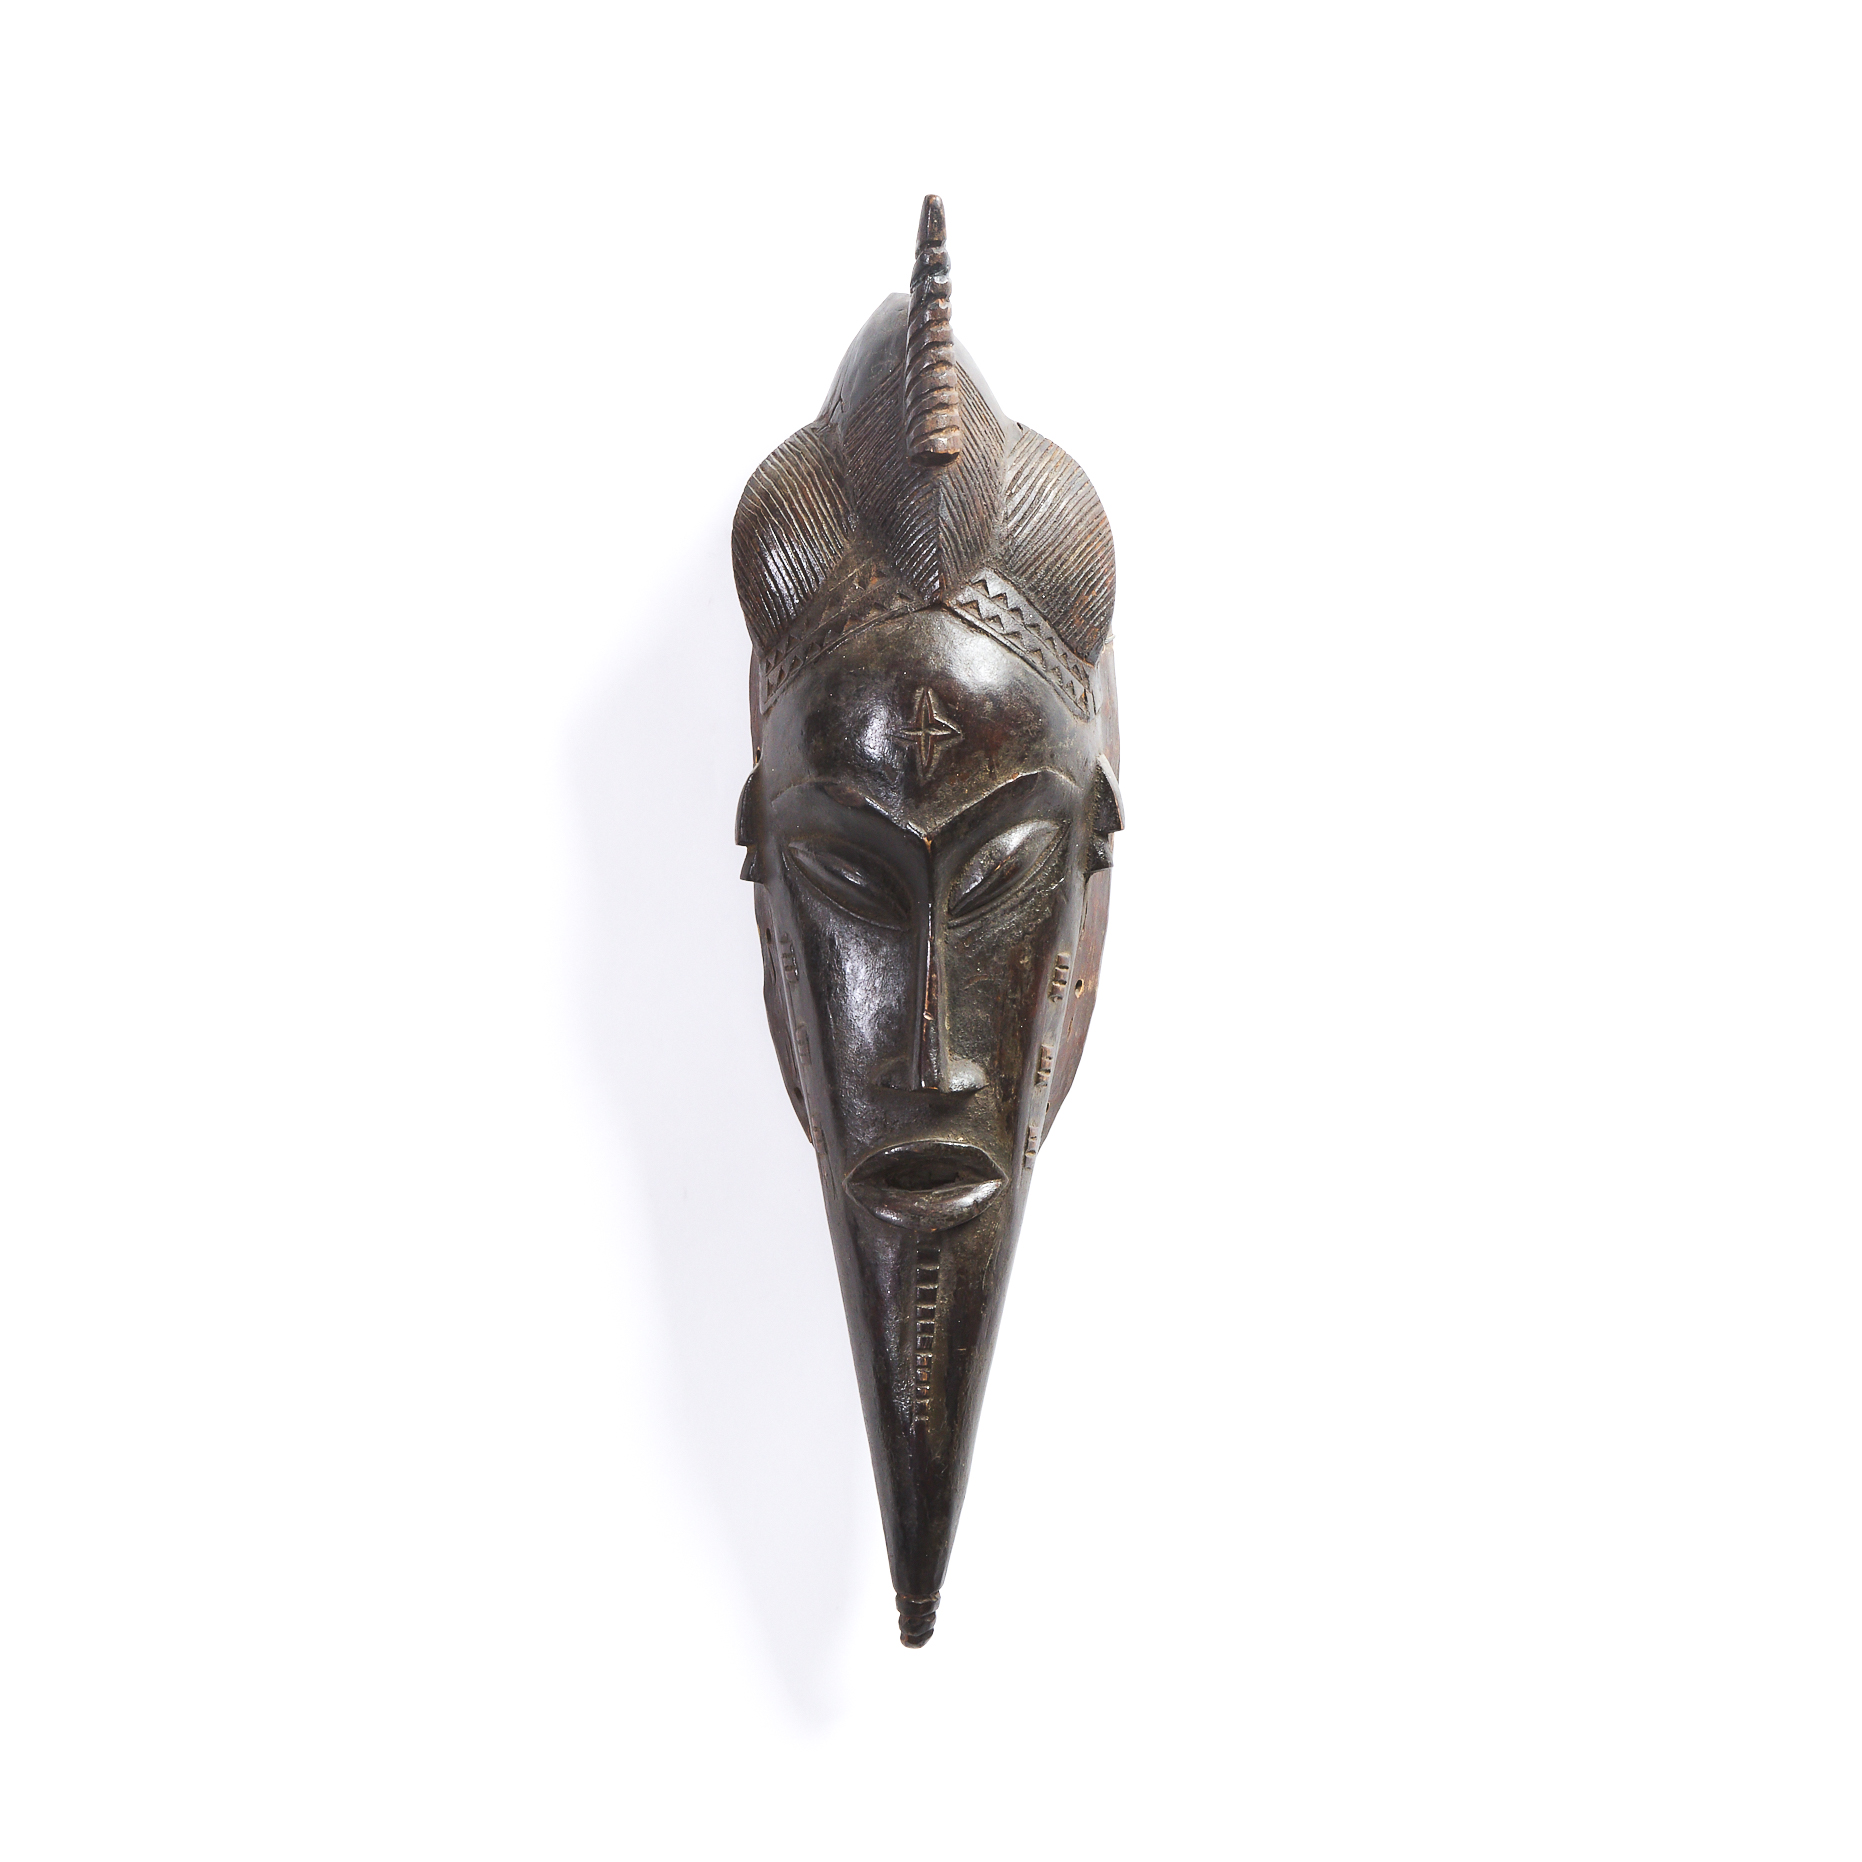 Baule Mask, Ivory Coast, West Africa, late 20th century